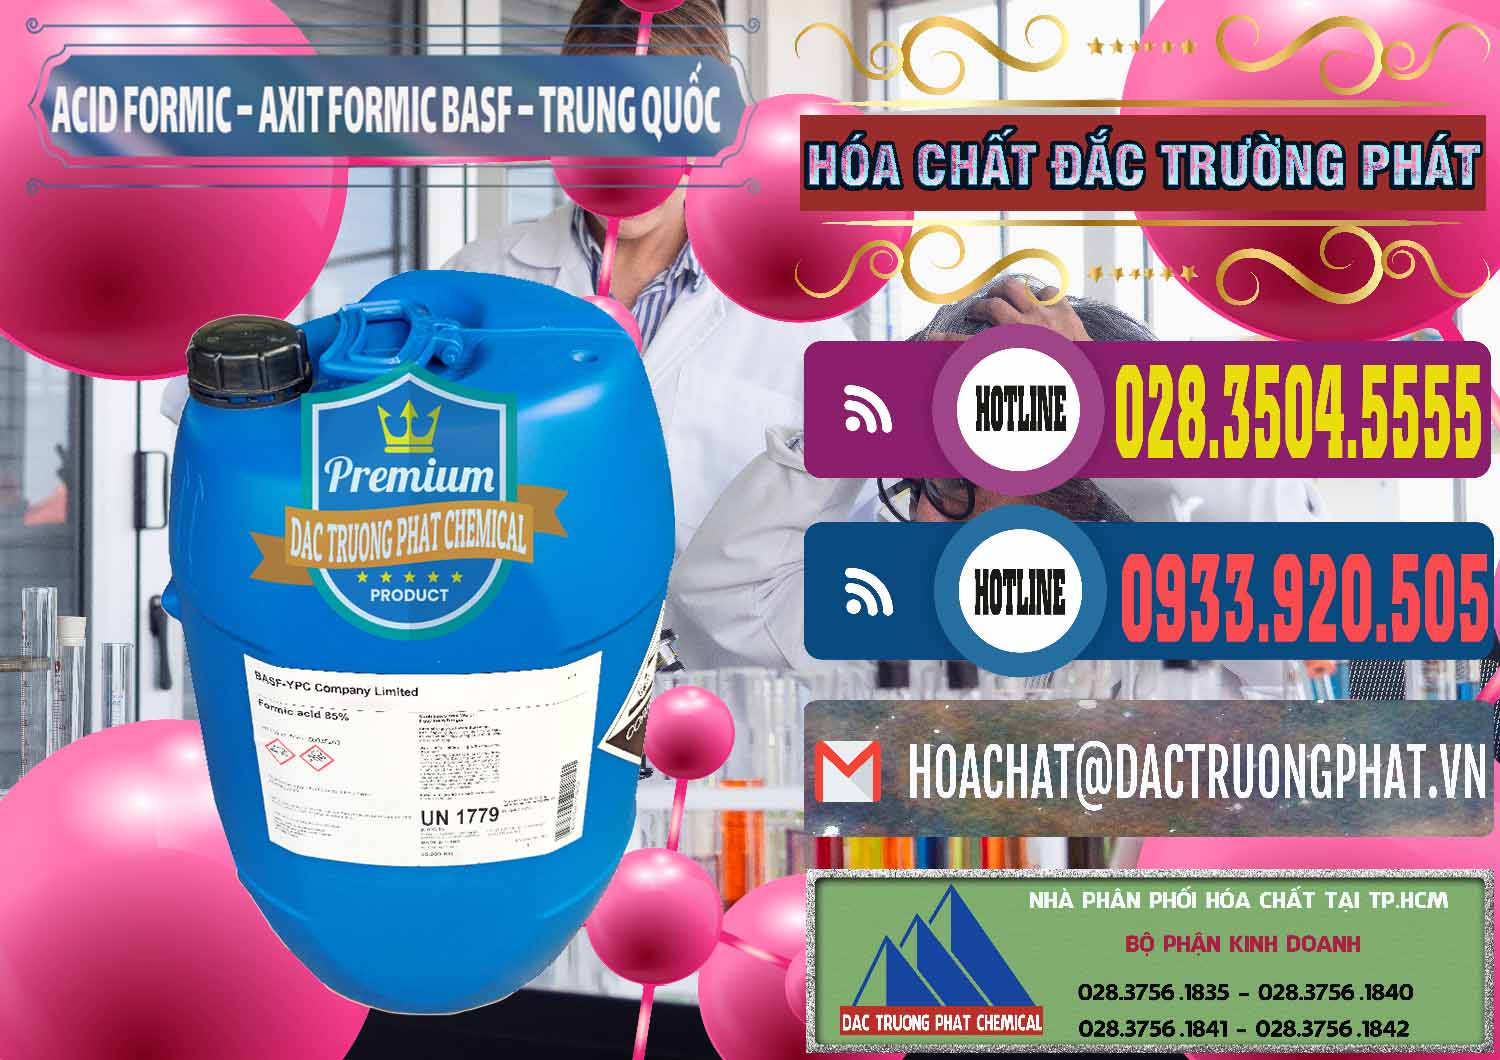 Cty chuyên bán - cung cấp Acid Formic - Axit Formic BASF Trung Quốc China - 0025 - Chuyên nhập khẩu & phân phối hóa chất tại TP.HCM - muabanhoachat.com.vn